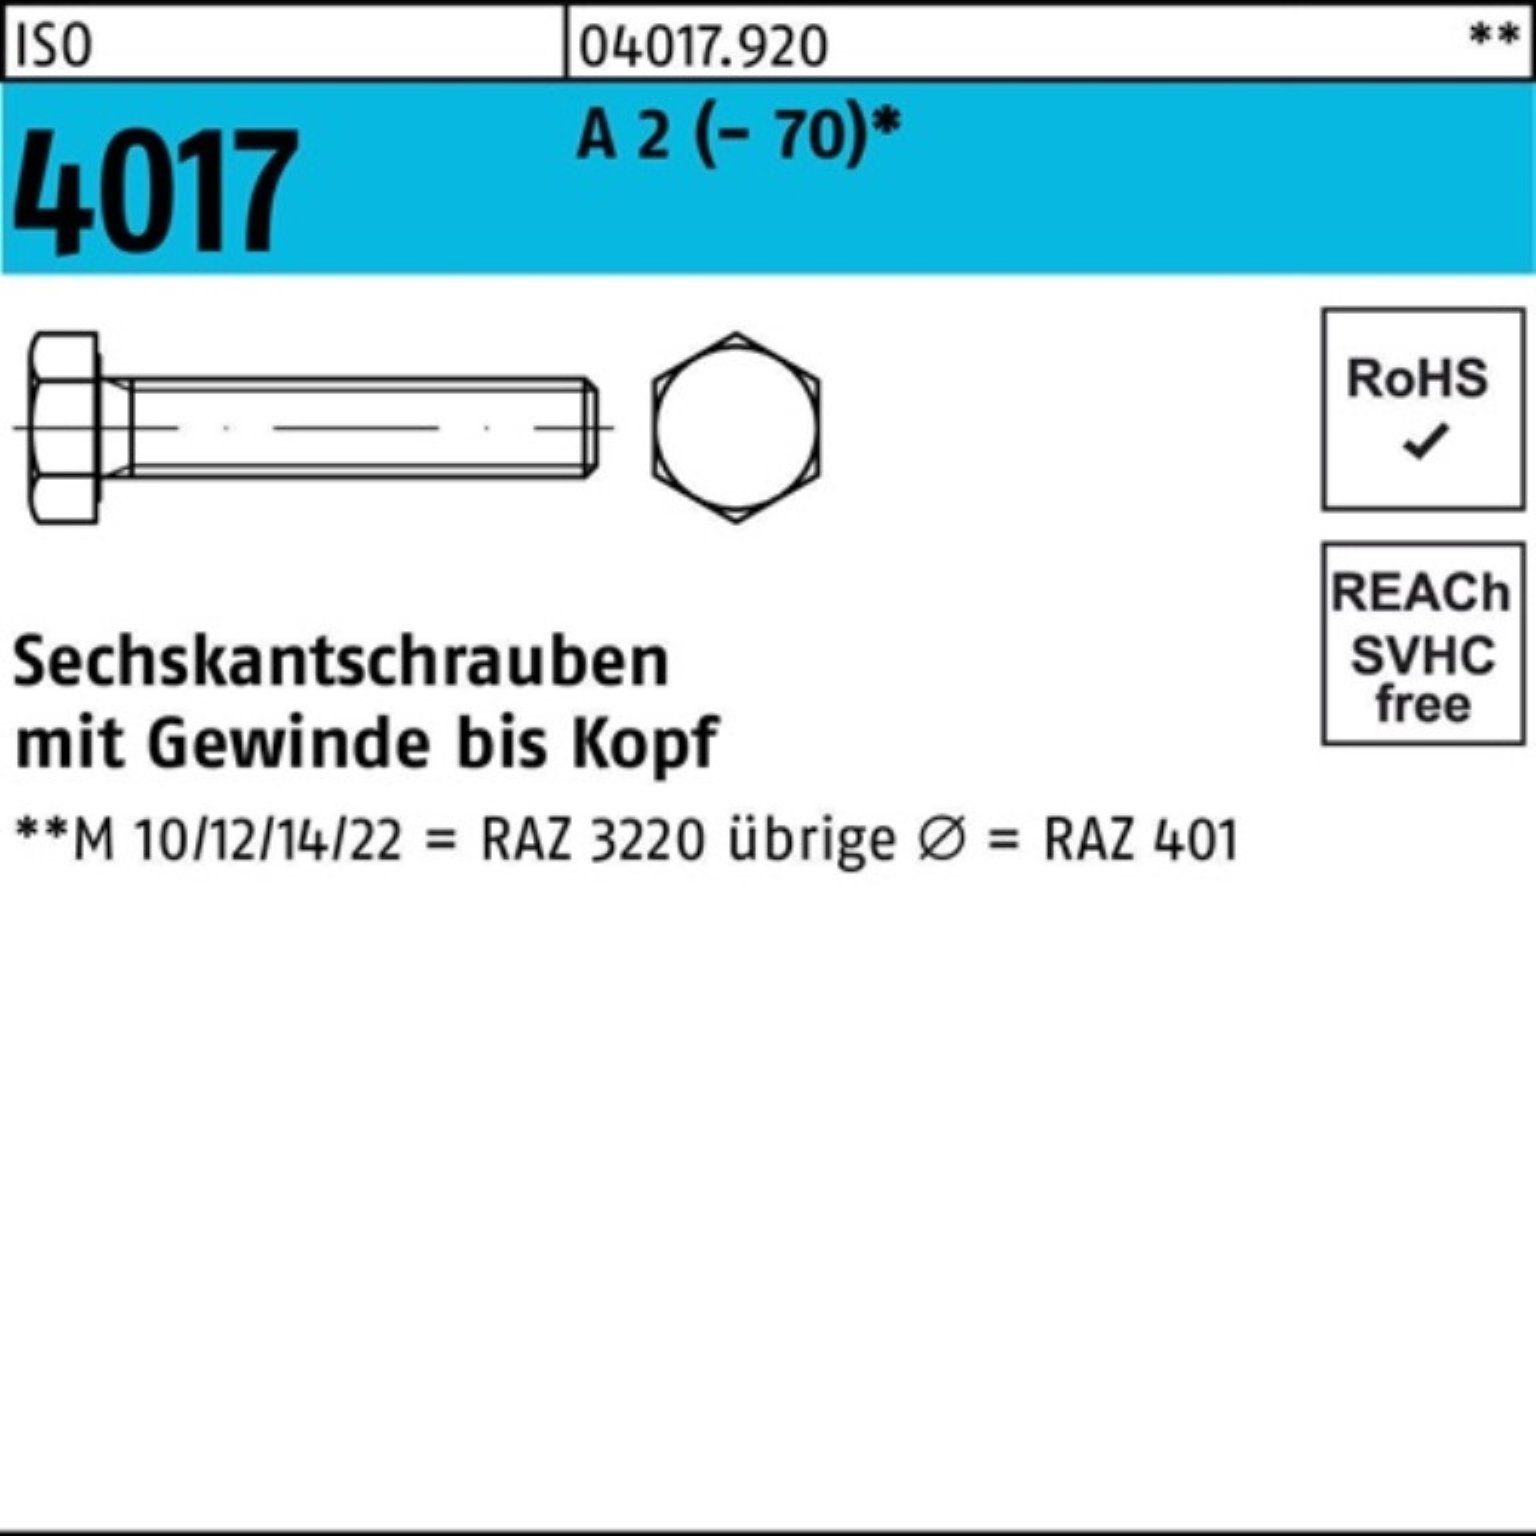 Bufab Sechskantschraube 100er Pack Sechskantschraube ISO 4017 VG M27x 60 A 2 (70) 1 Stück I